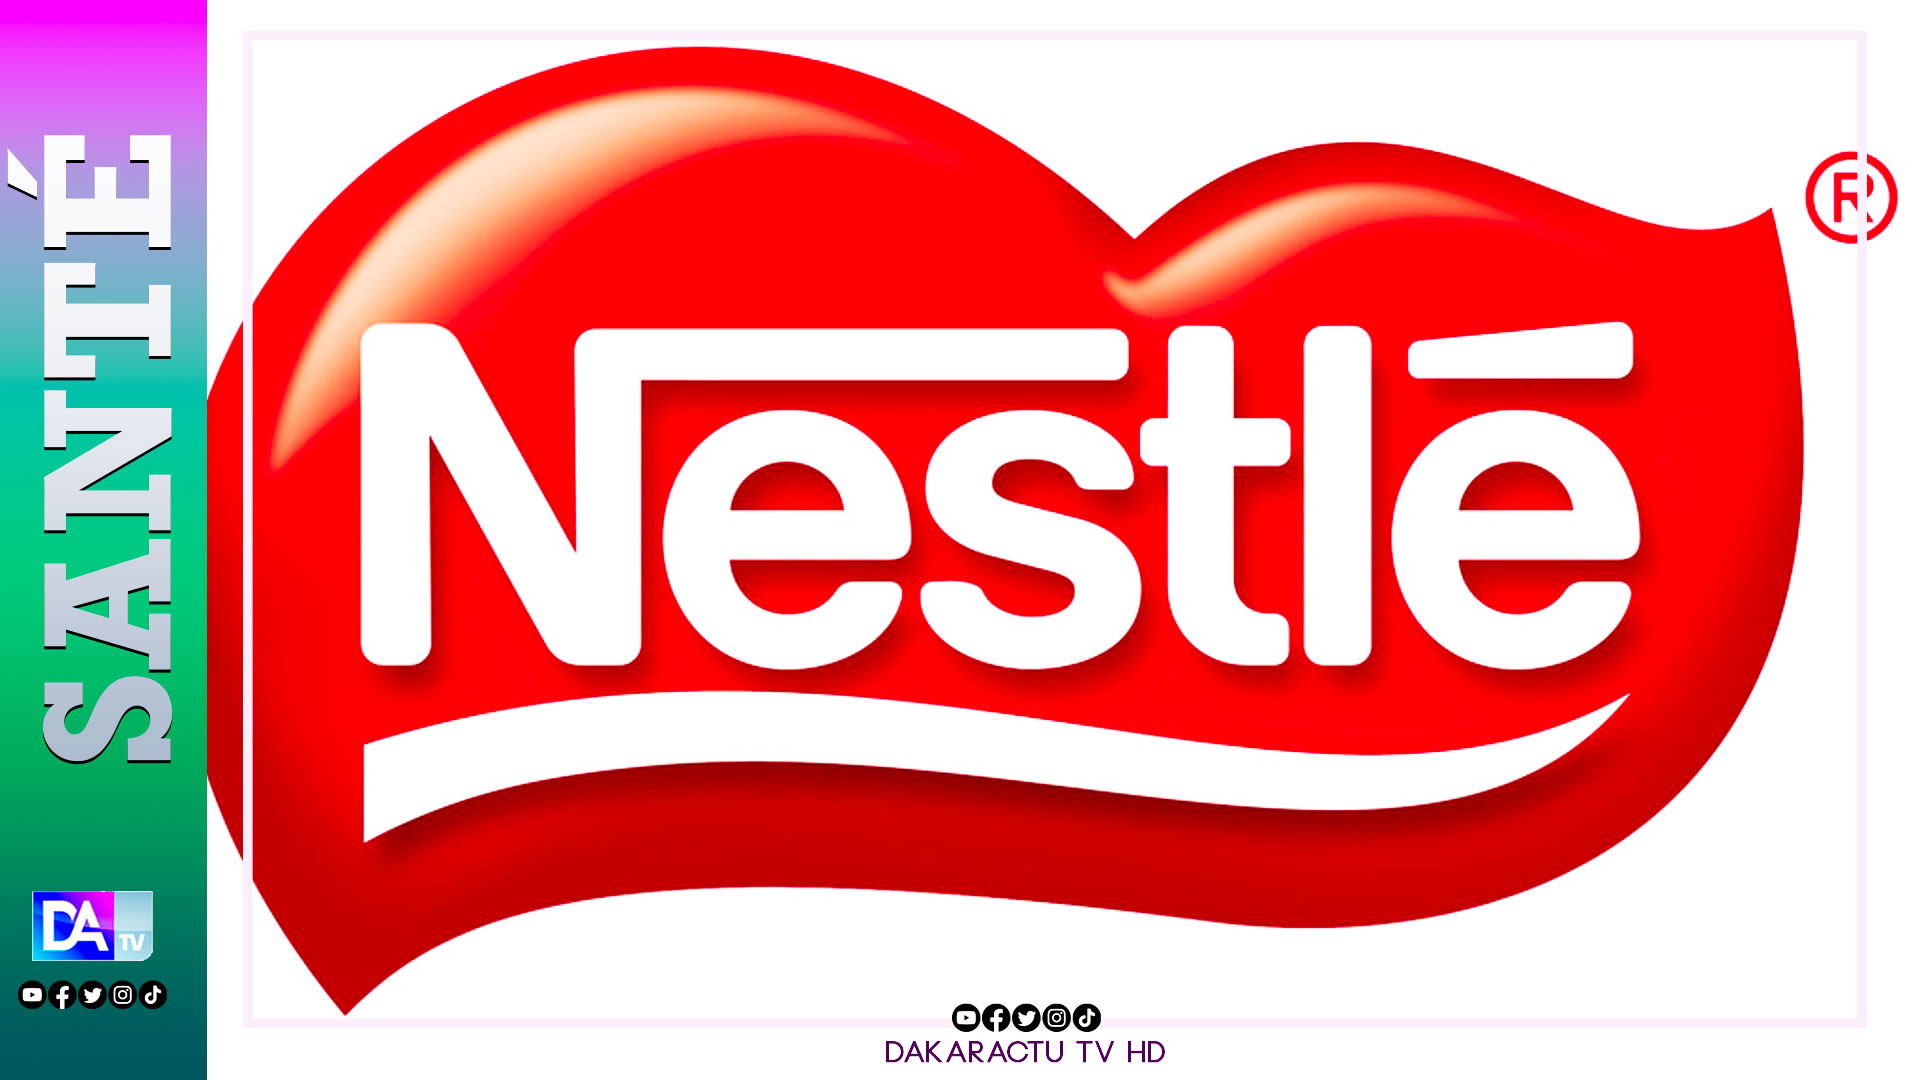 Nestlé : L'entreprise est accusée de sucrer à "des niveaux élevés" ses produits laitiers pour enfants dans les pays pauvres, contrairement à ce qu'elle fait en Europe